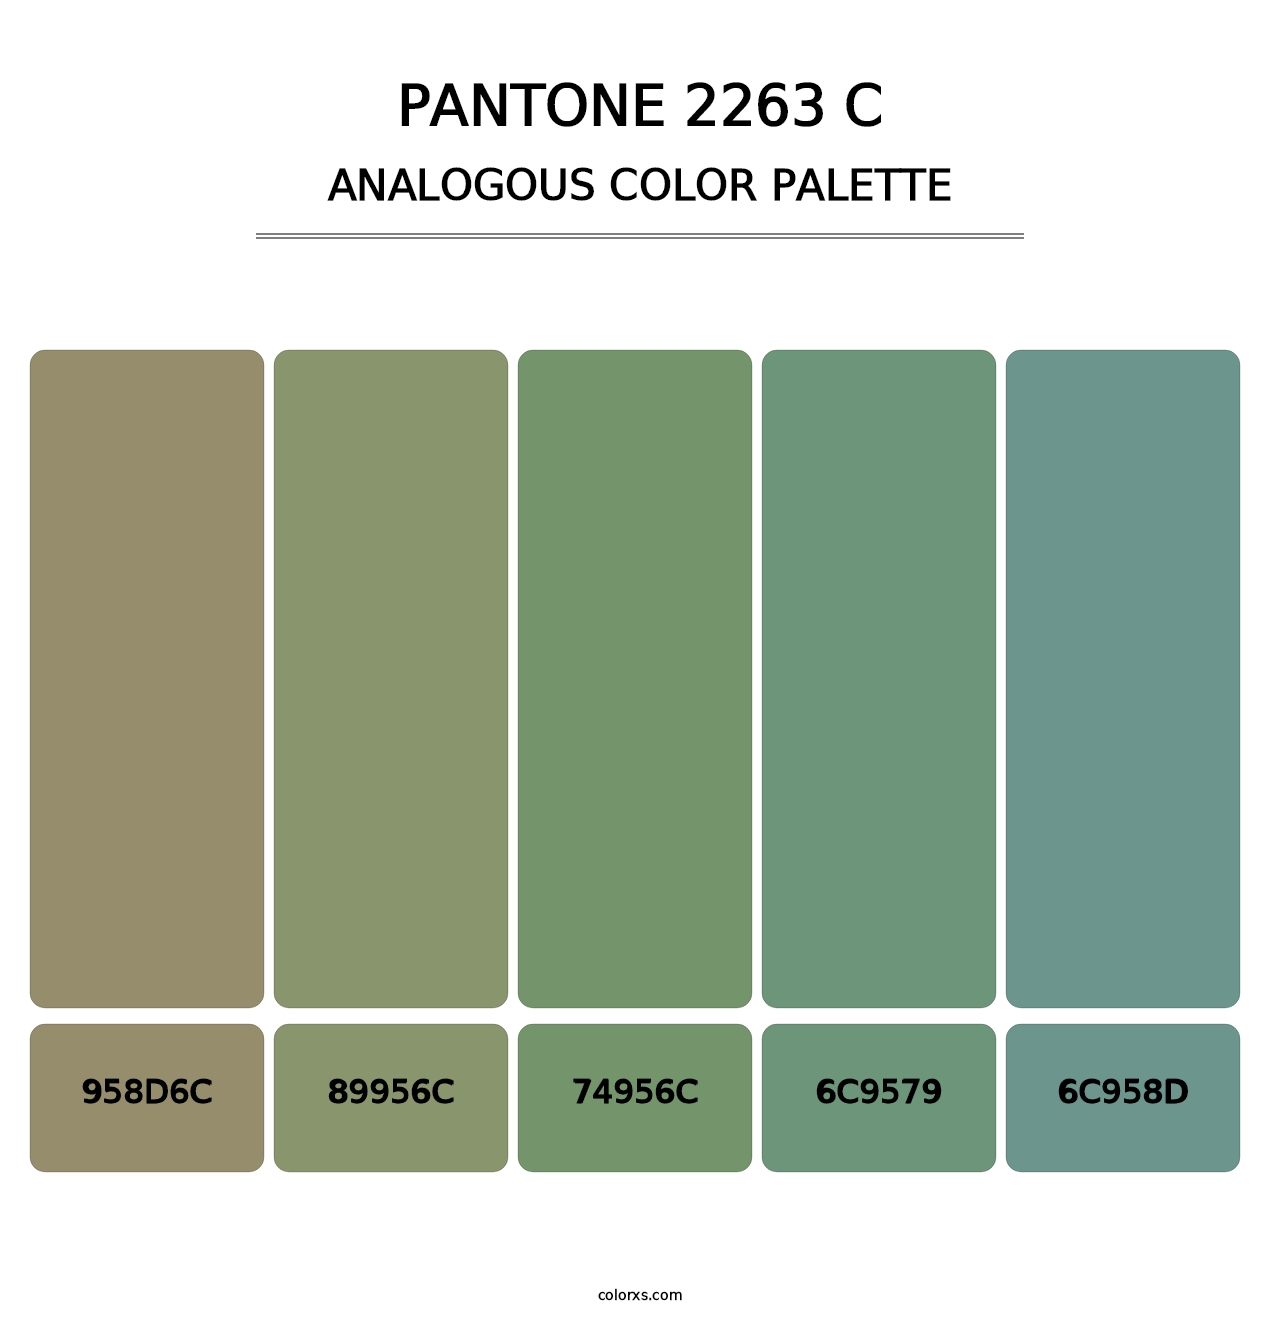 PANTONE 2263 C - Analogous Color Palette